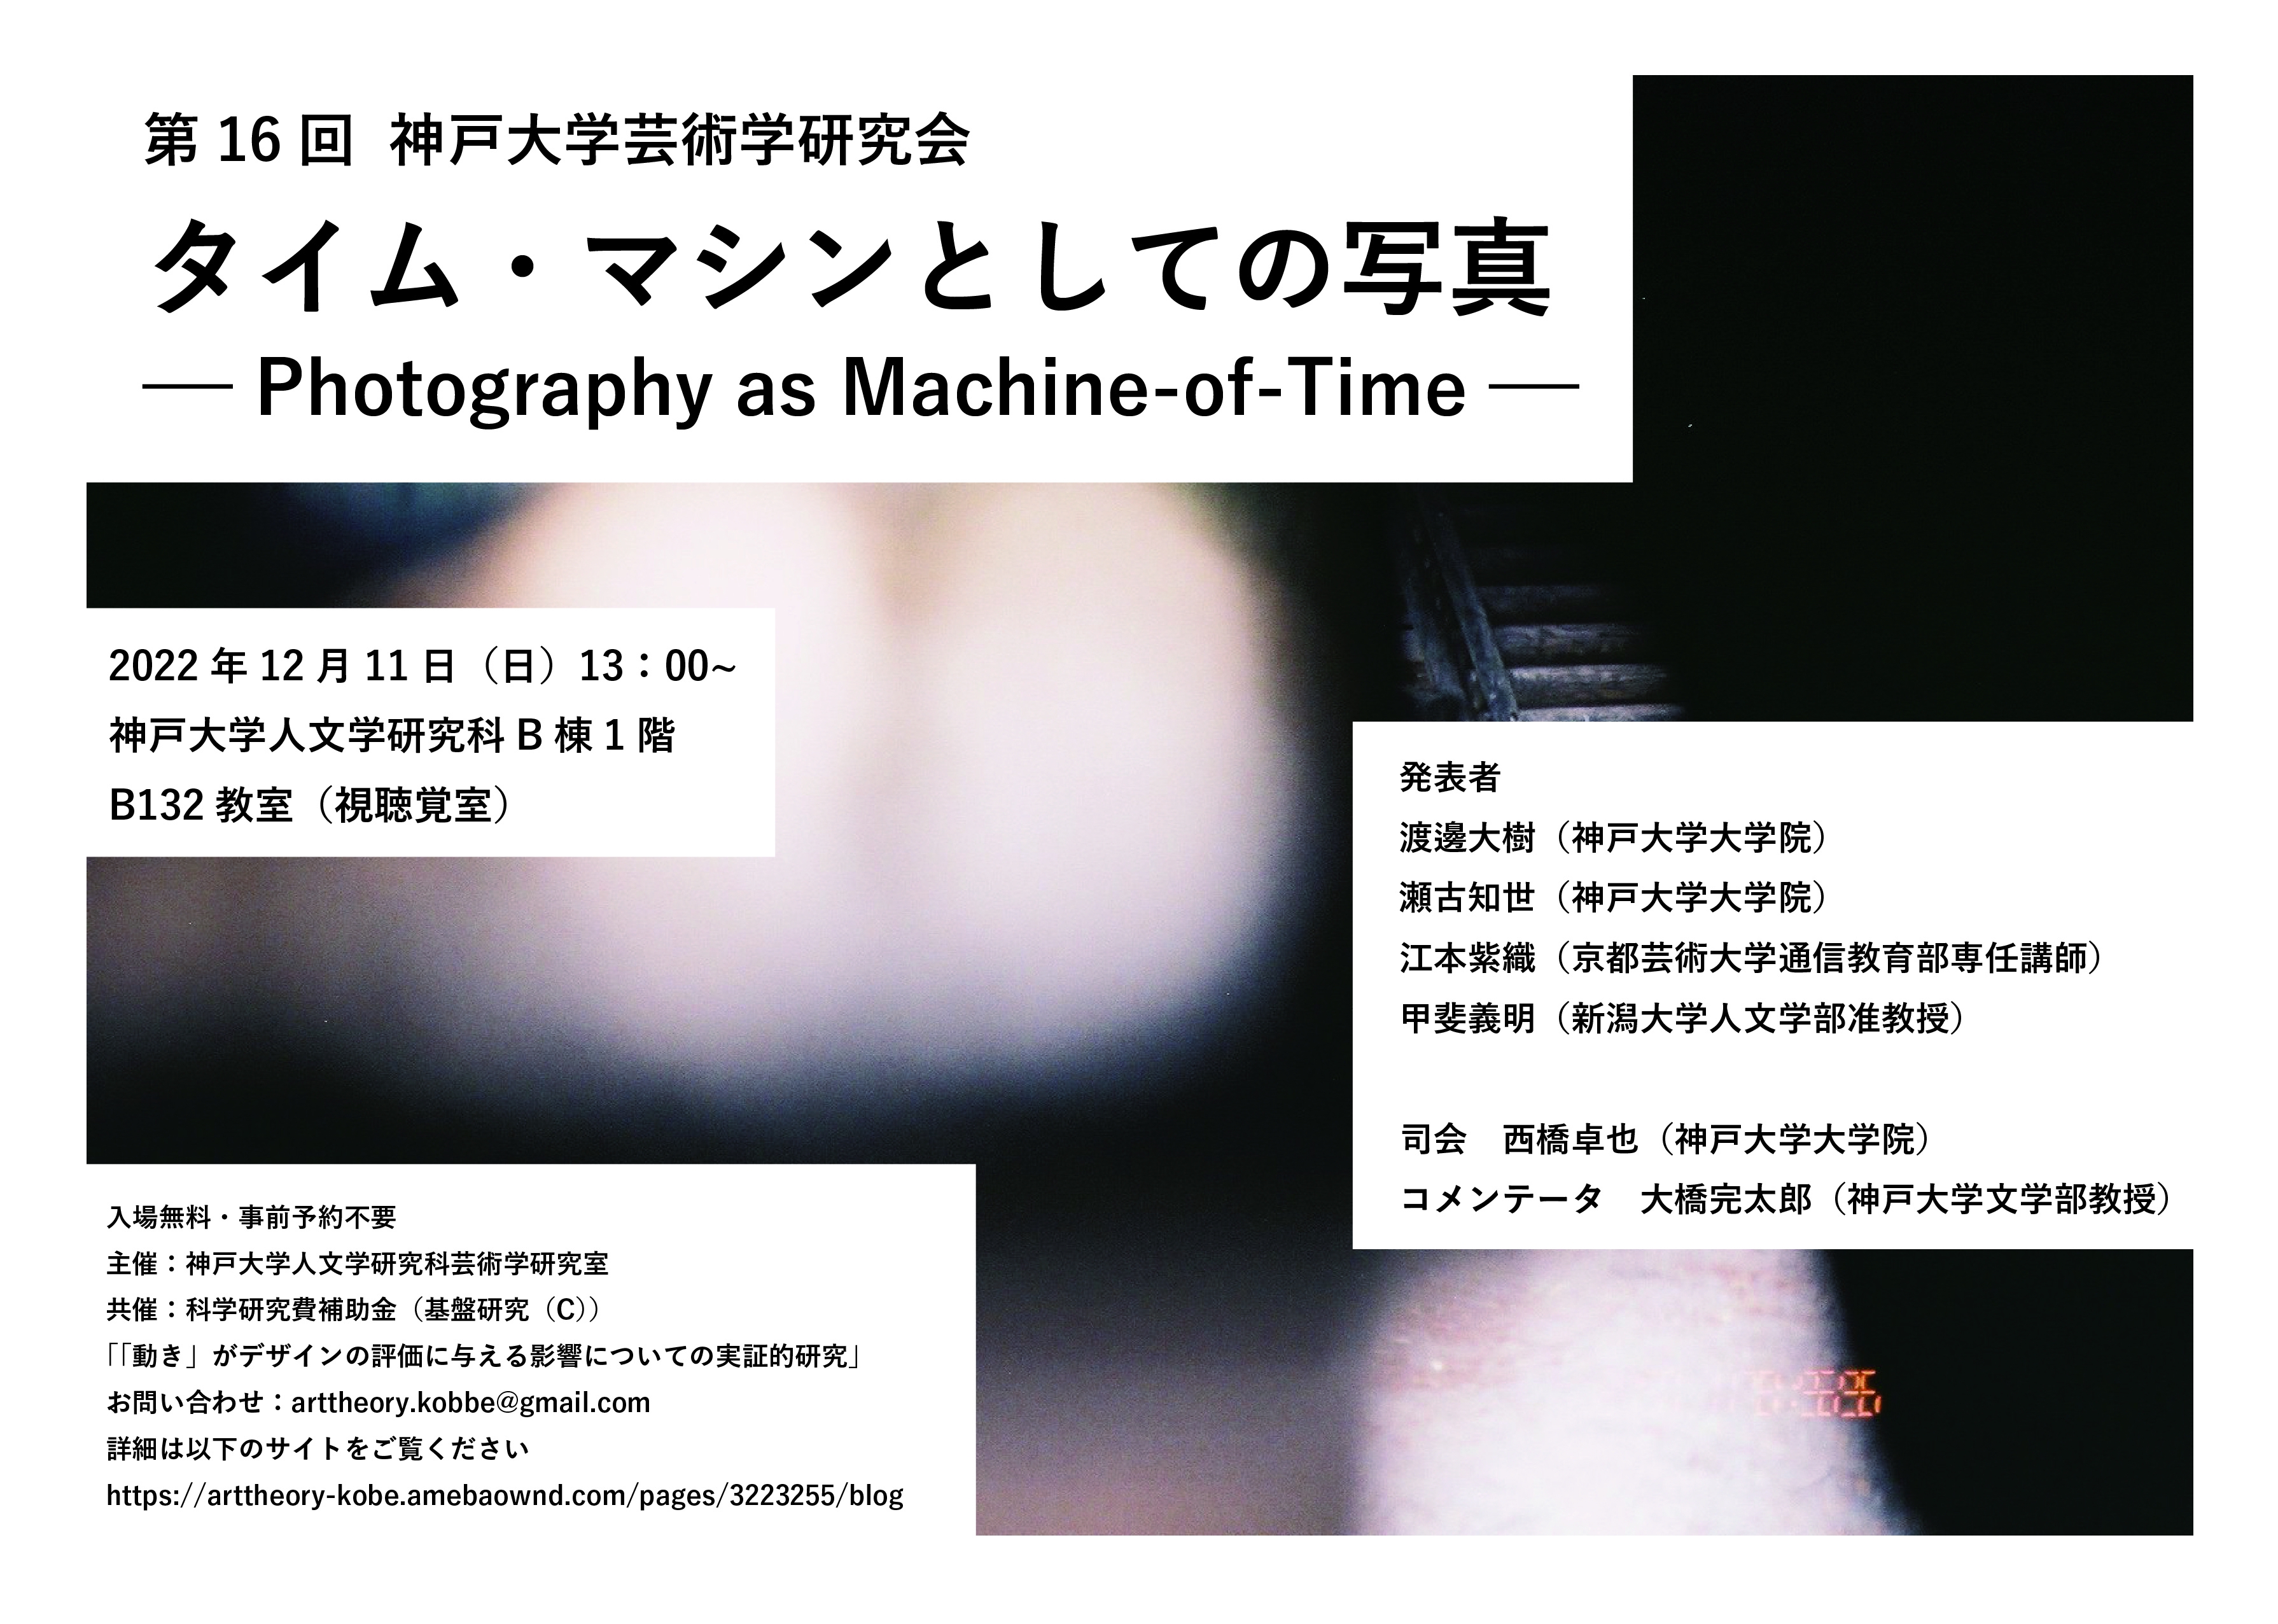 イベント | 神戸大学芸術学研究室